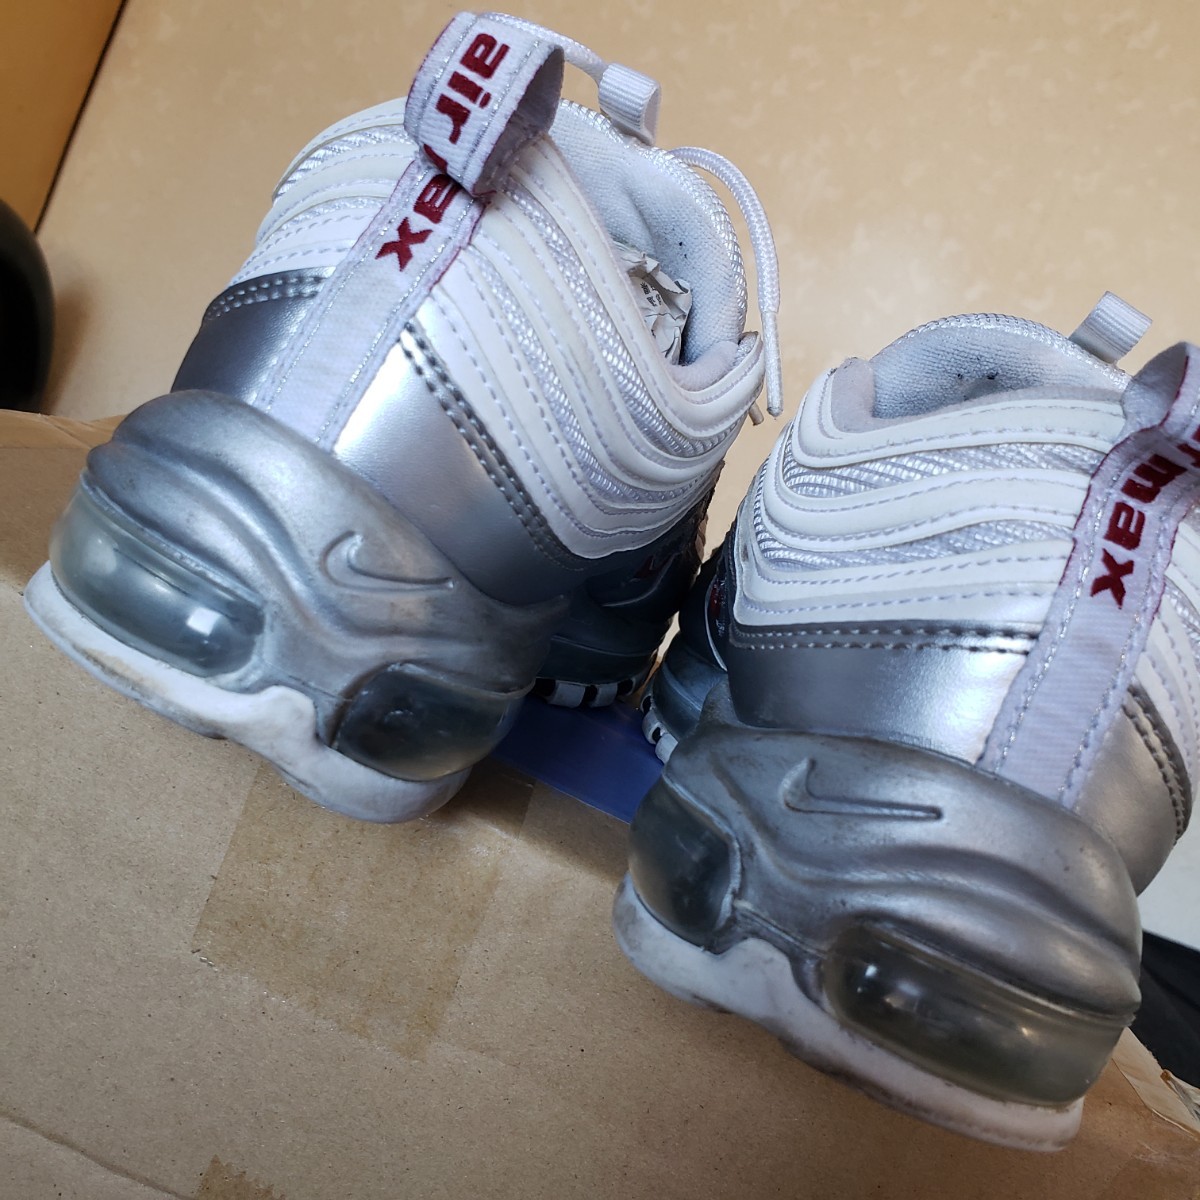 NIKE ナイキ AIRMAX エアマックス 97 QS スニーカー sneaker 白×銀 shoes シューズ 27.5㎝ 靴 white silver ランニング US9.5 靴 running